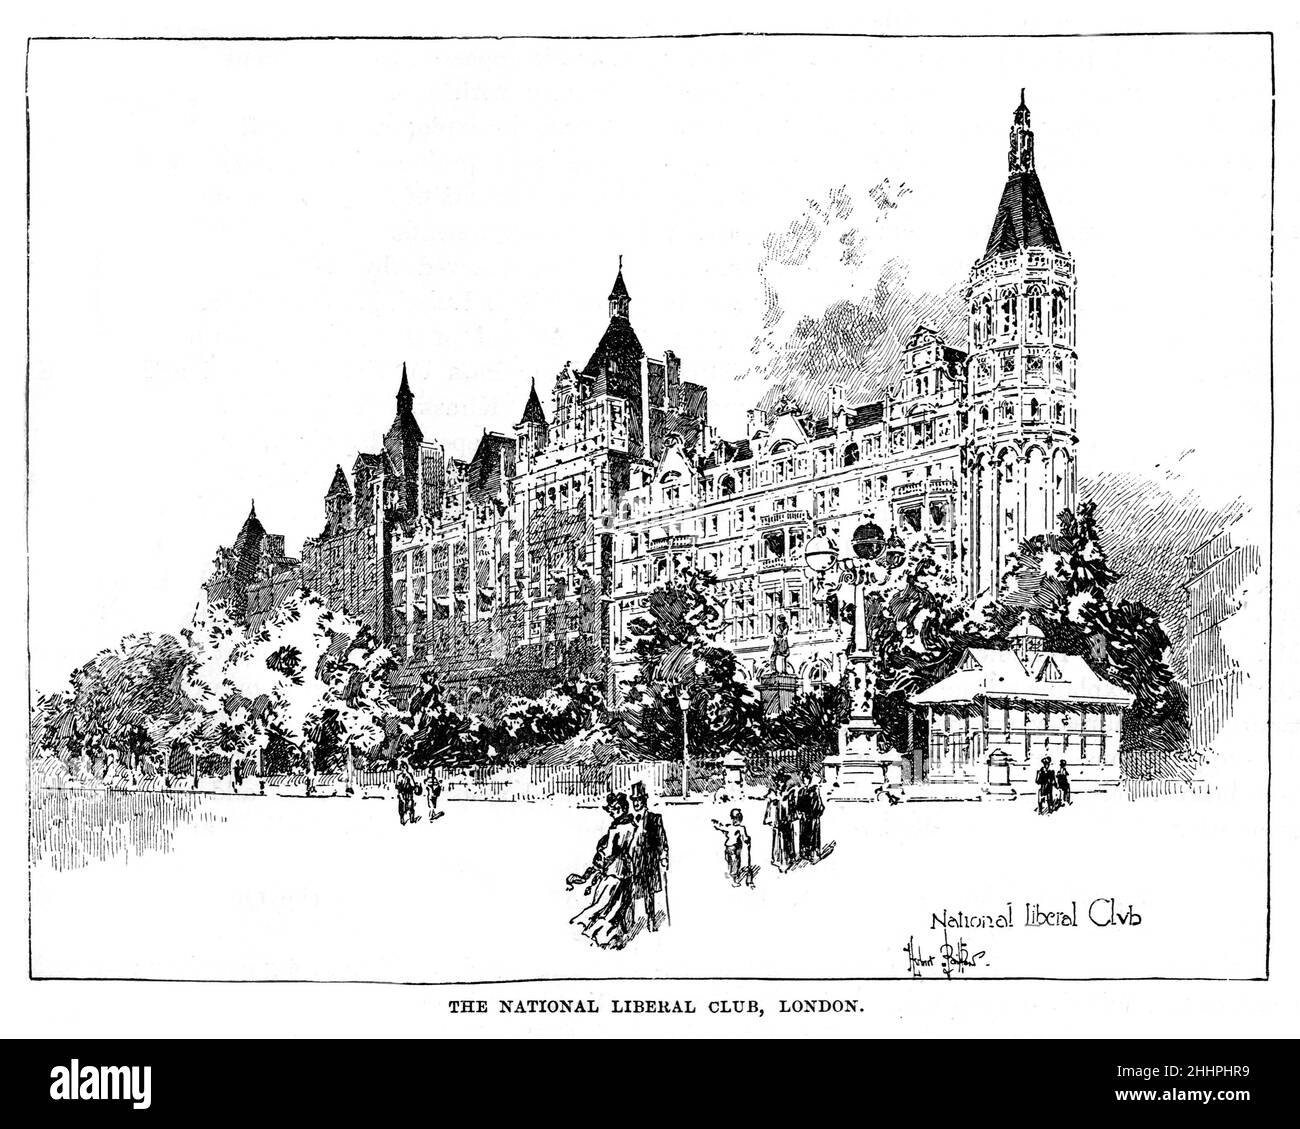 Ilustración en blanco y negro; el Club Liberal Nacional, Londres, alrededor de 1885, establecido por William Ewart Gladstone en 1882 Foto de stock